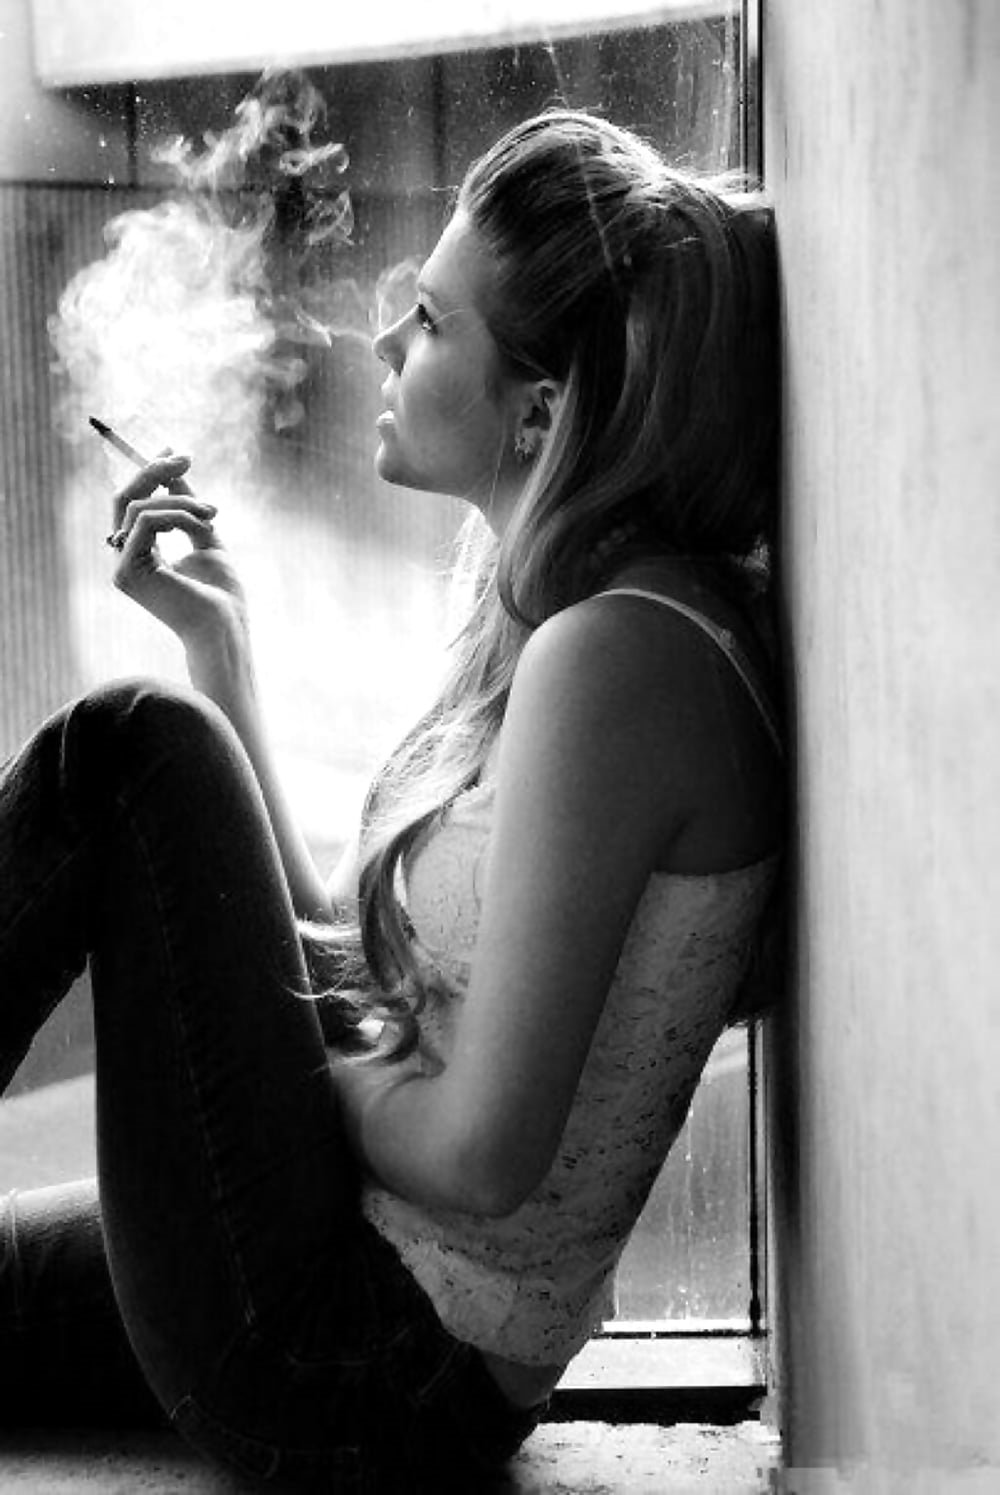 Курящая девушка на диване